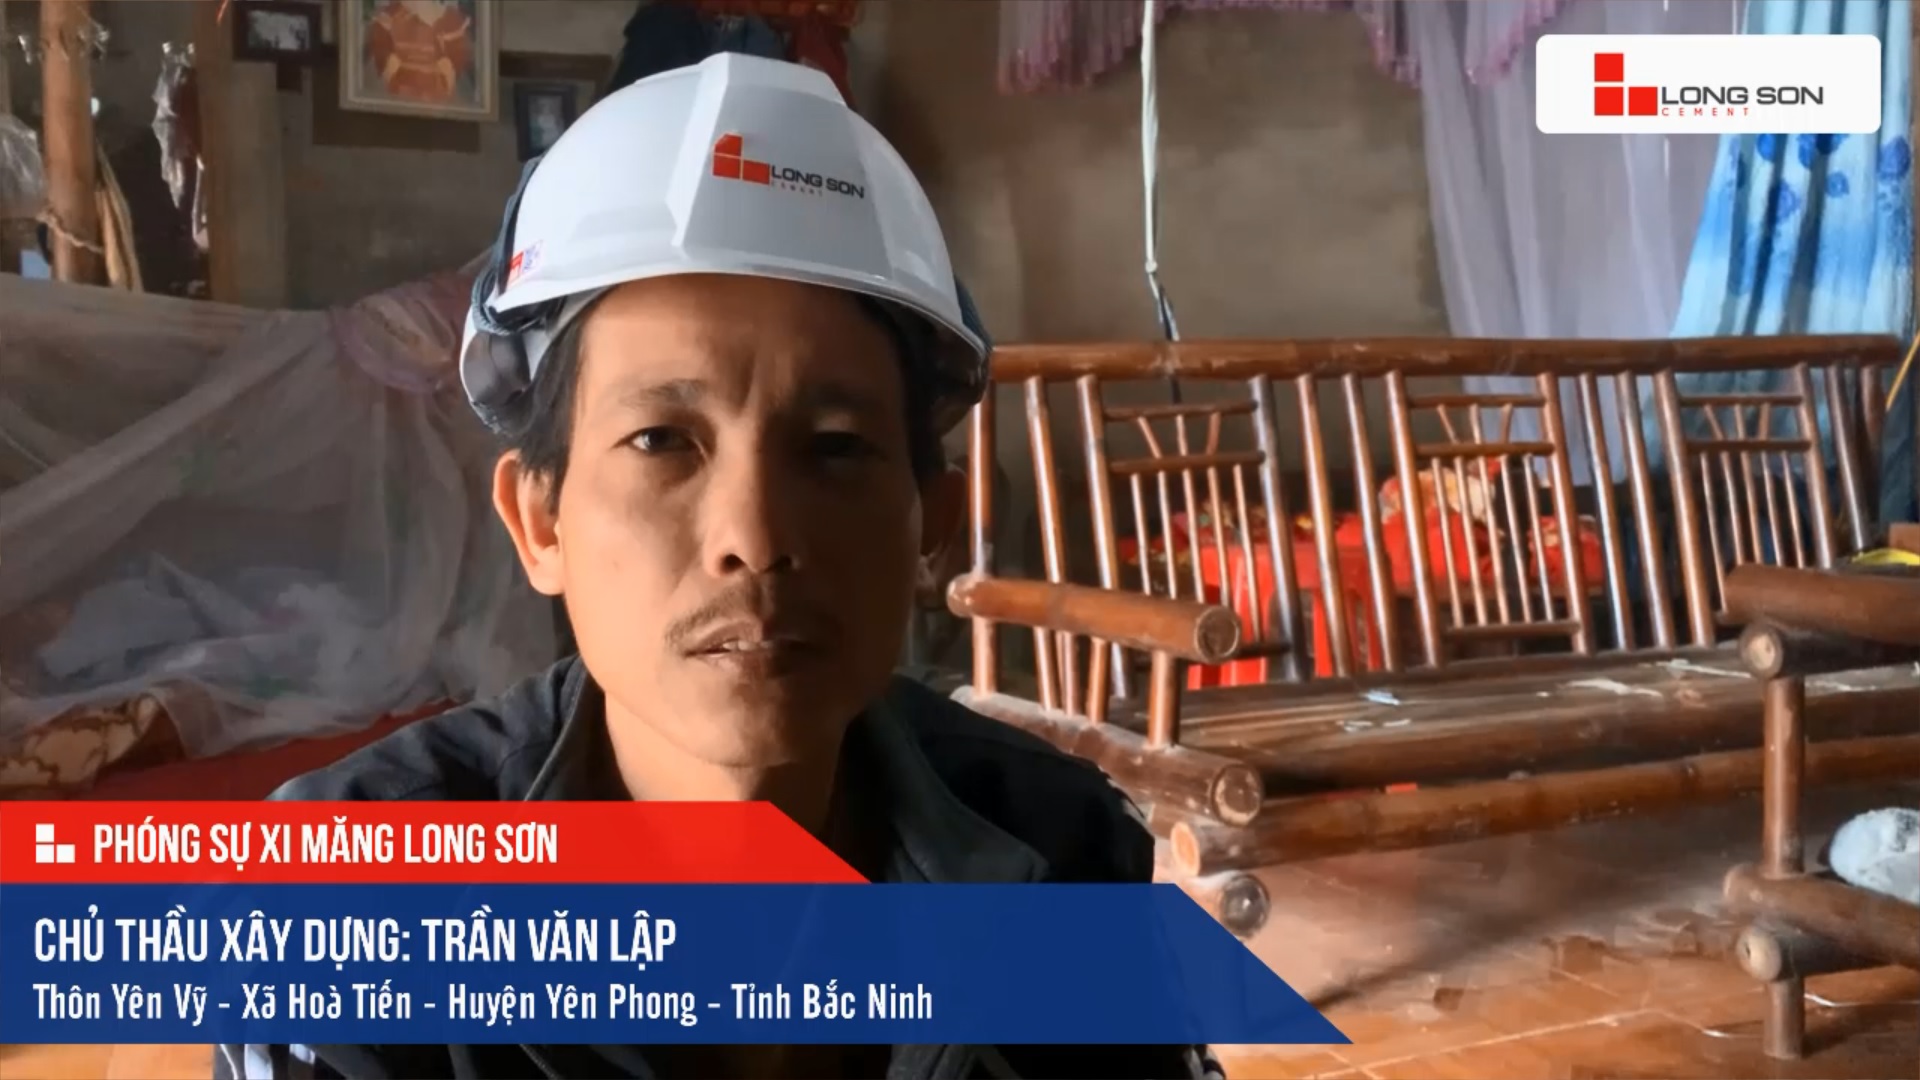 Phóng sự công trình sử dụng Xi măng Long Sơn tại Bắc Ninh 20.12.2020